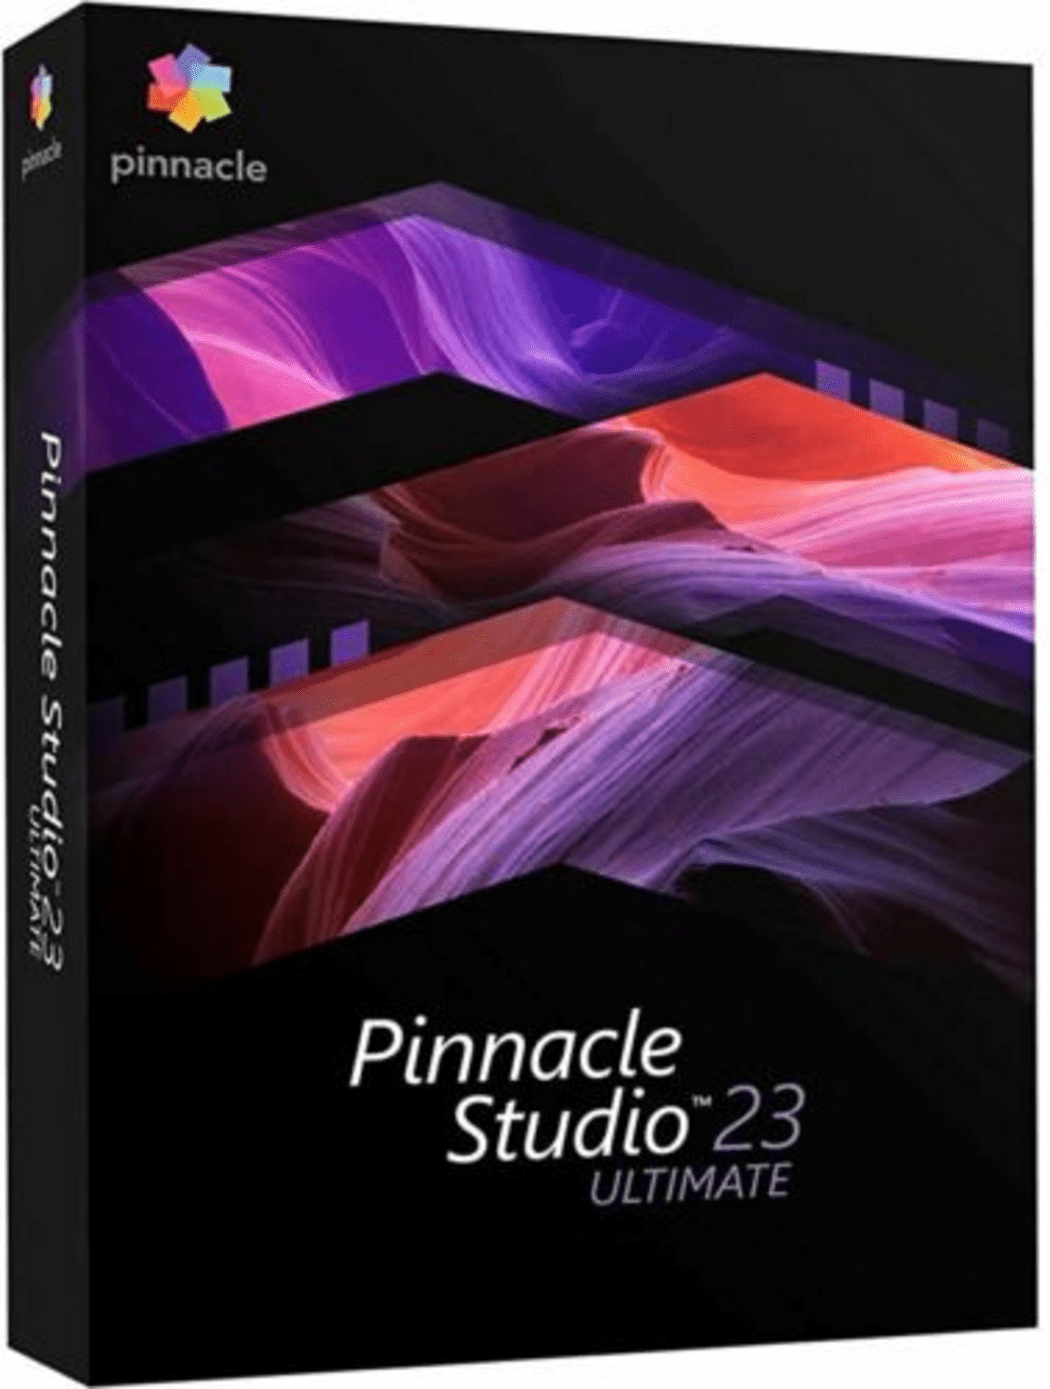 maagd liefde timer Pinnacle Studio 23 Ultimate Official Website Key GLOBAL kopen | ENEBA